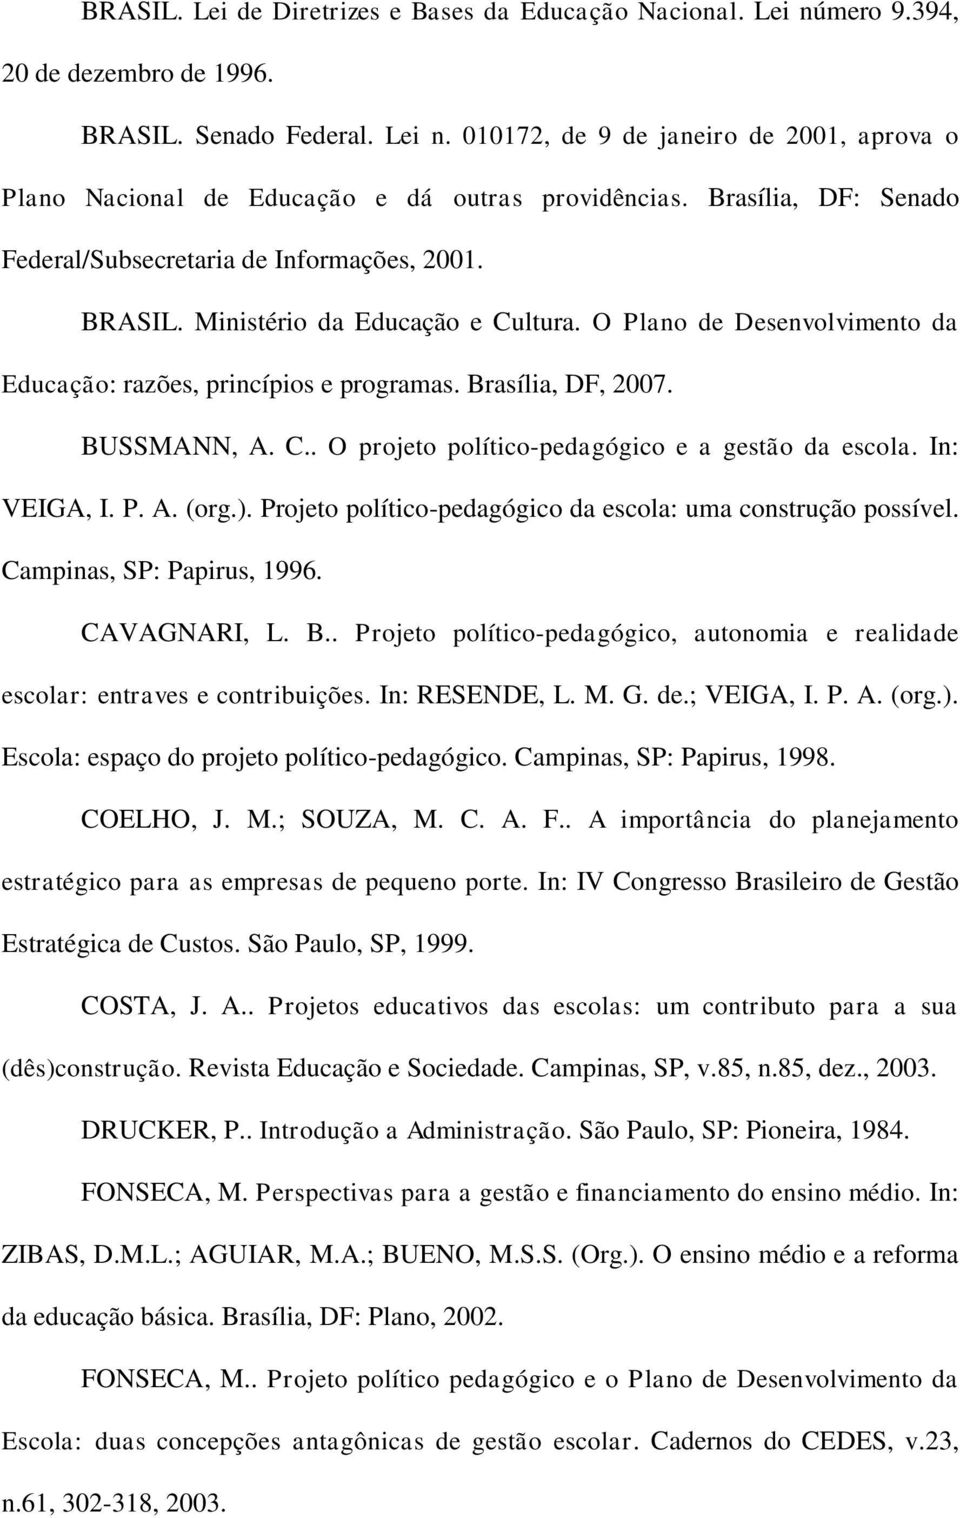 BUSSMANN, A. C.. O projeto político-pedagógico e a gestão da escola. In: VEIGA, I. P. A. (org.). Projeto político-pedagógico da escola: uma construção possível. Campinas, SP: Papirus, 1996.